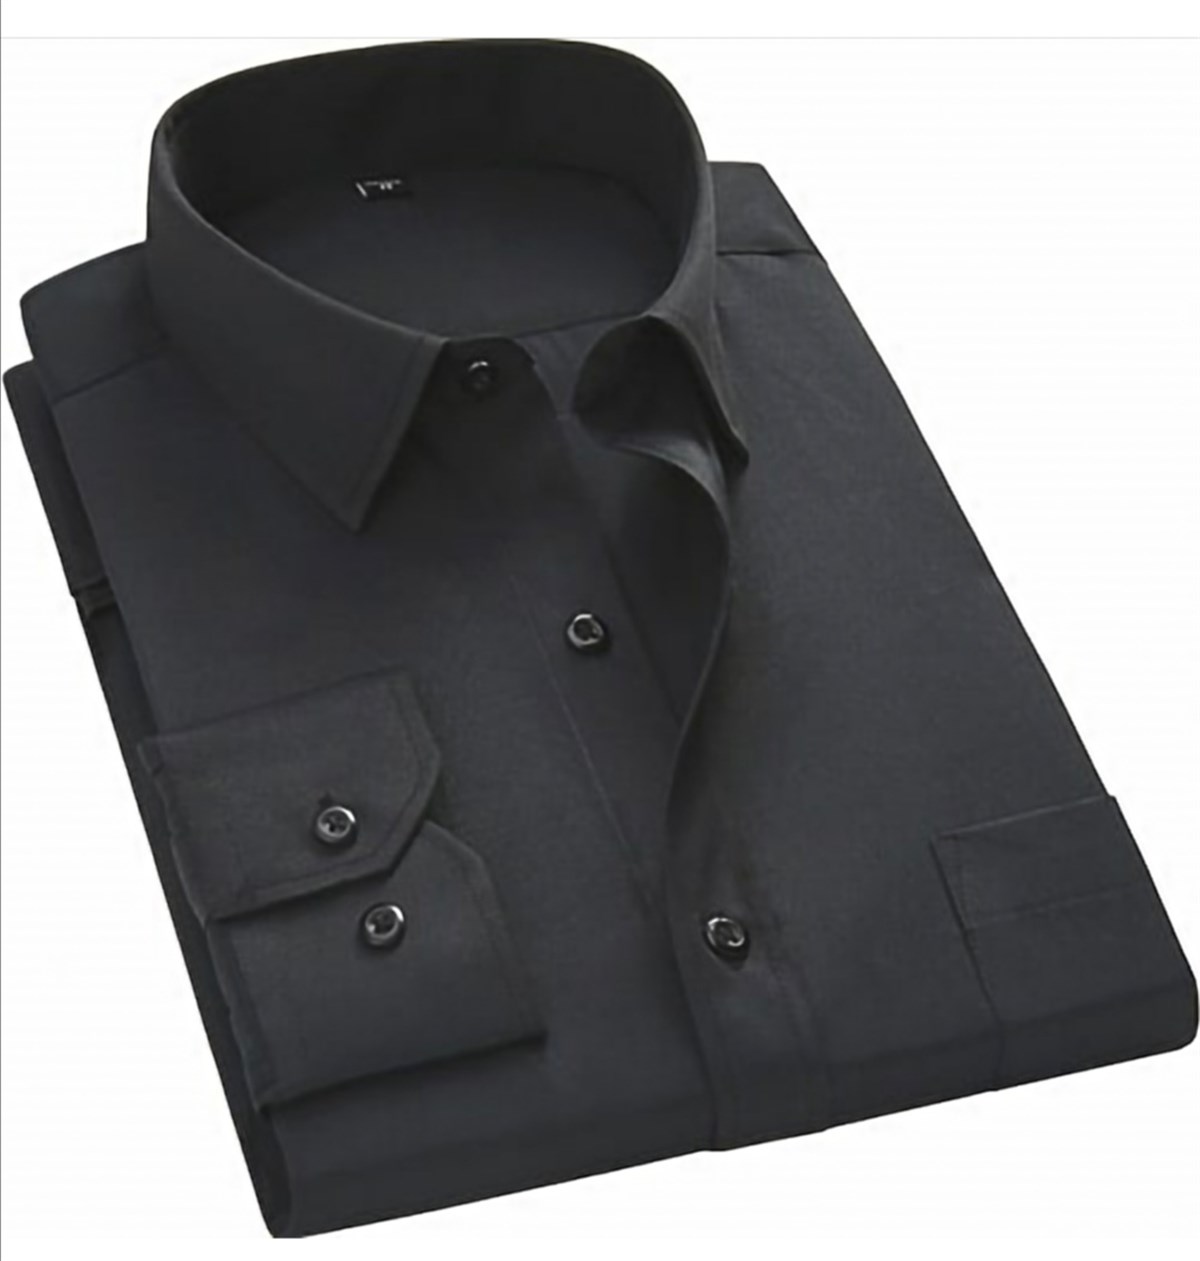 Siyah Klasik Kesim Gömlek Modelleri ve Fiyatları | Agustini